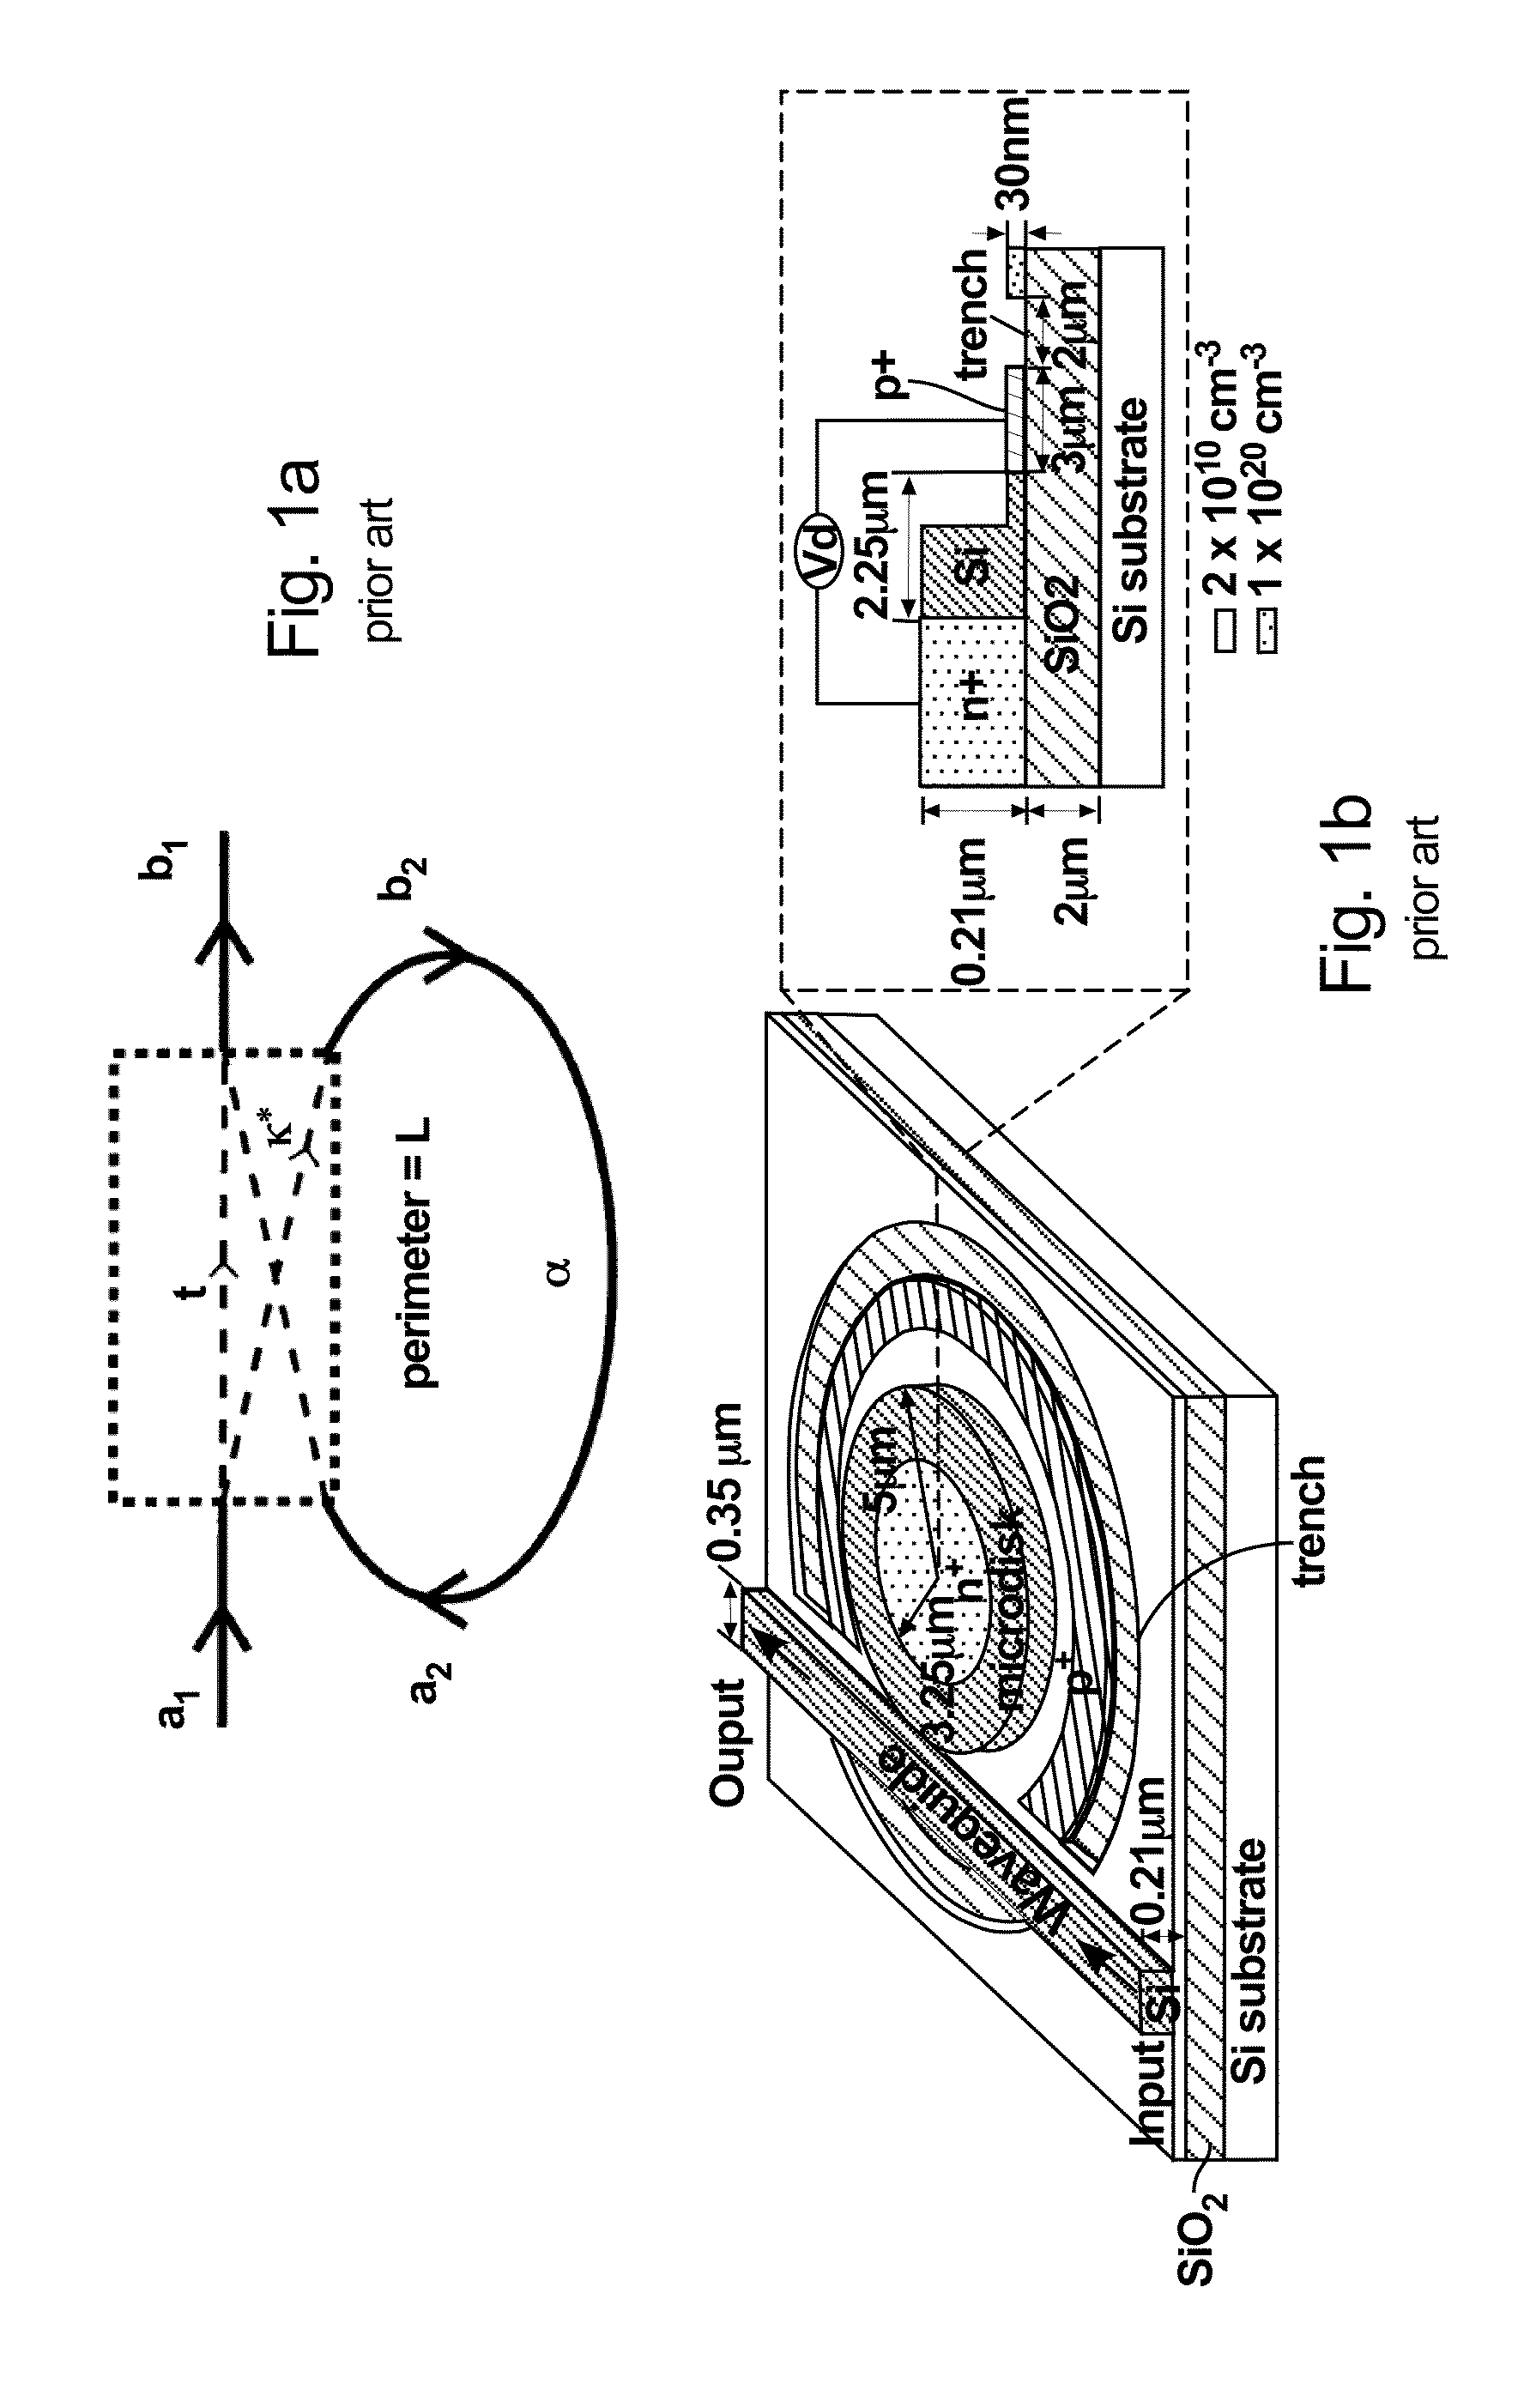 Re-circulation enhanced electro-optic modulator